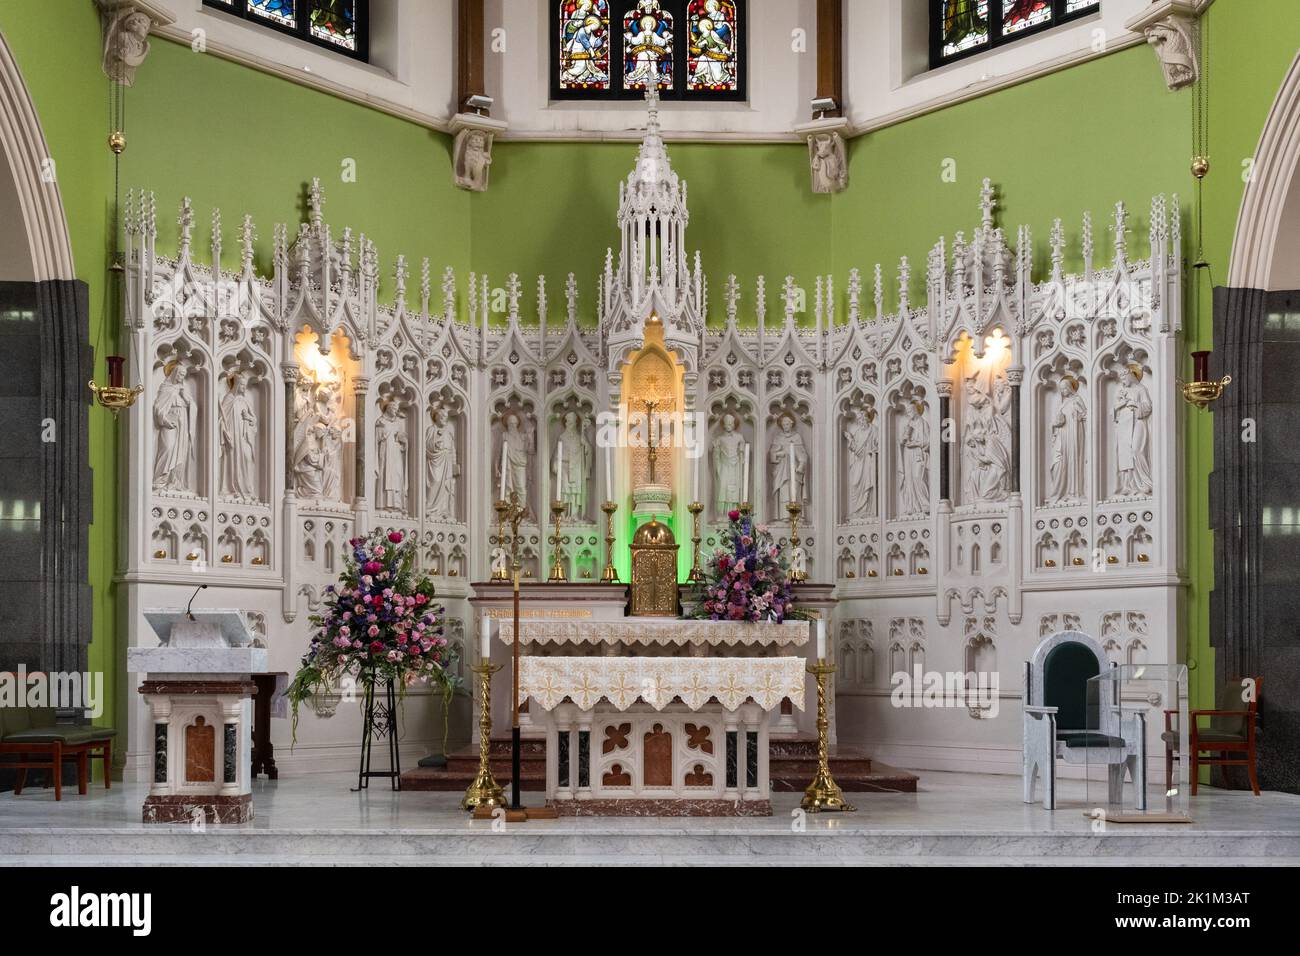 San Alfonso de la Iglesia Católica Romana altar mayor y retablos pinzados - Calton, Glasgow, Escocia, Reino Unido Foto de stock